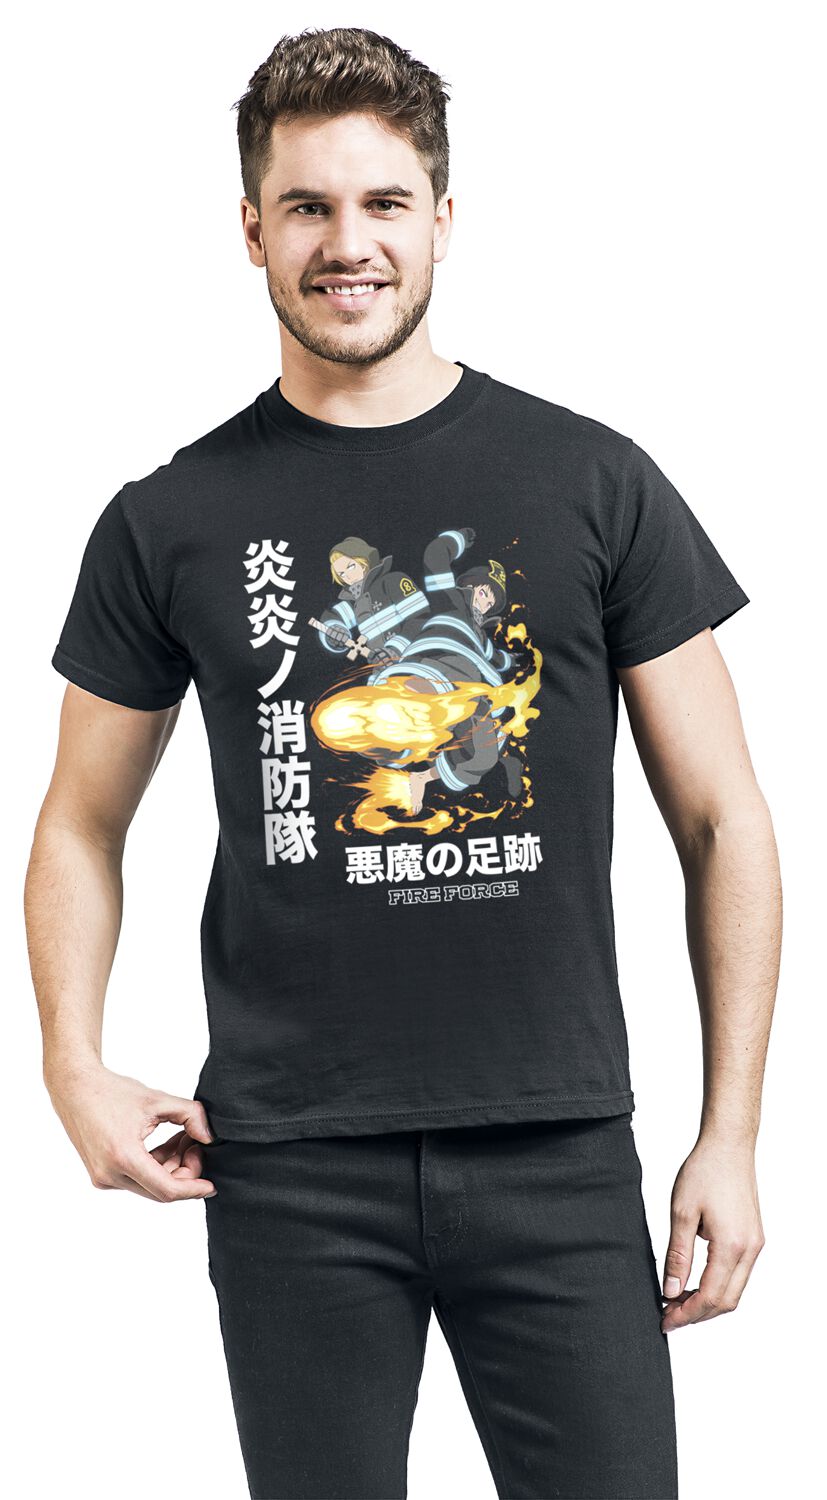 Fire Force - Anime T-Shirt - Devil Footprints - S bis XL - für Männer - Größe S - schwarz  - Lizenzierter Fanartikel